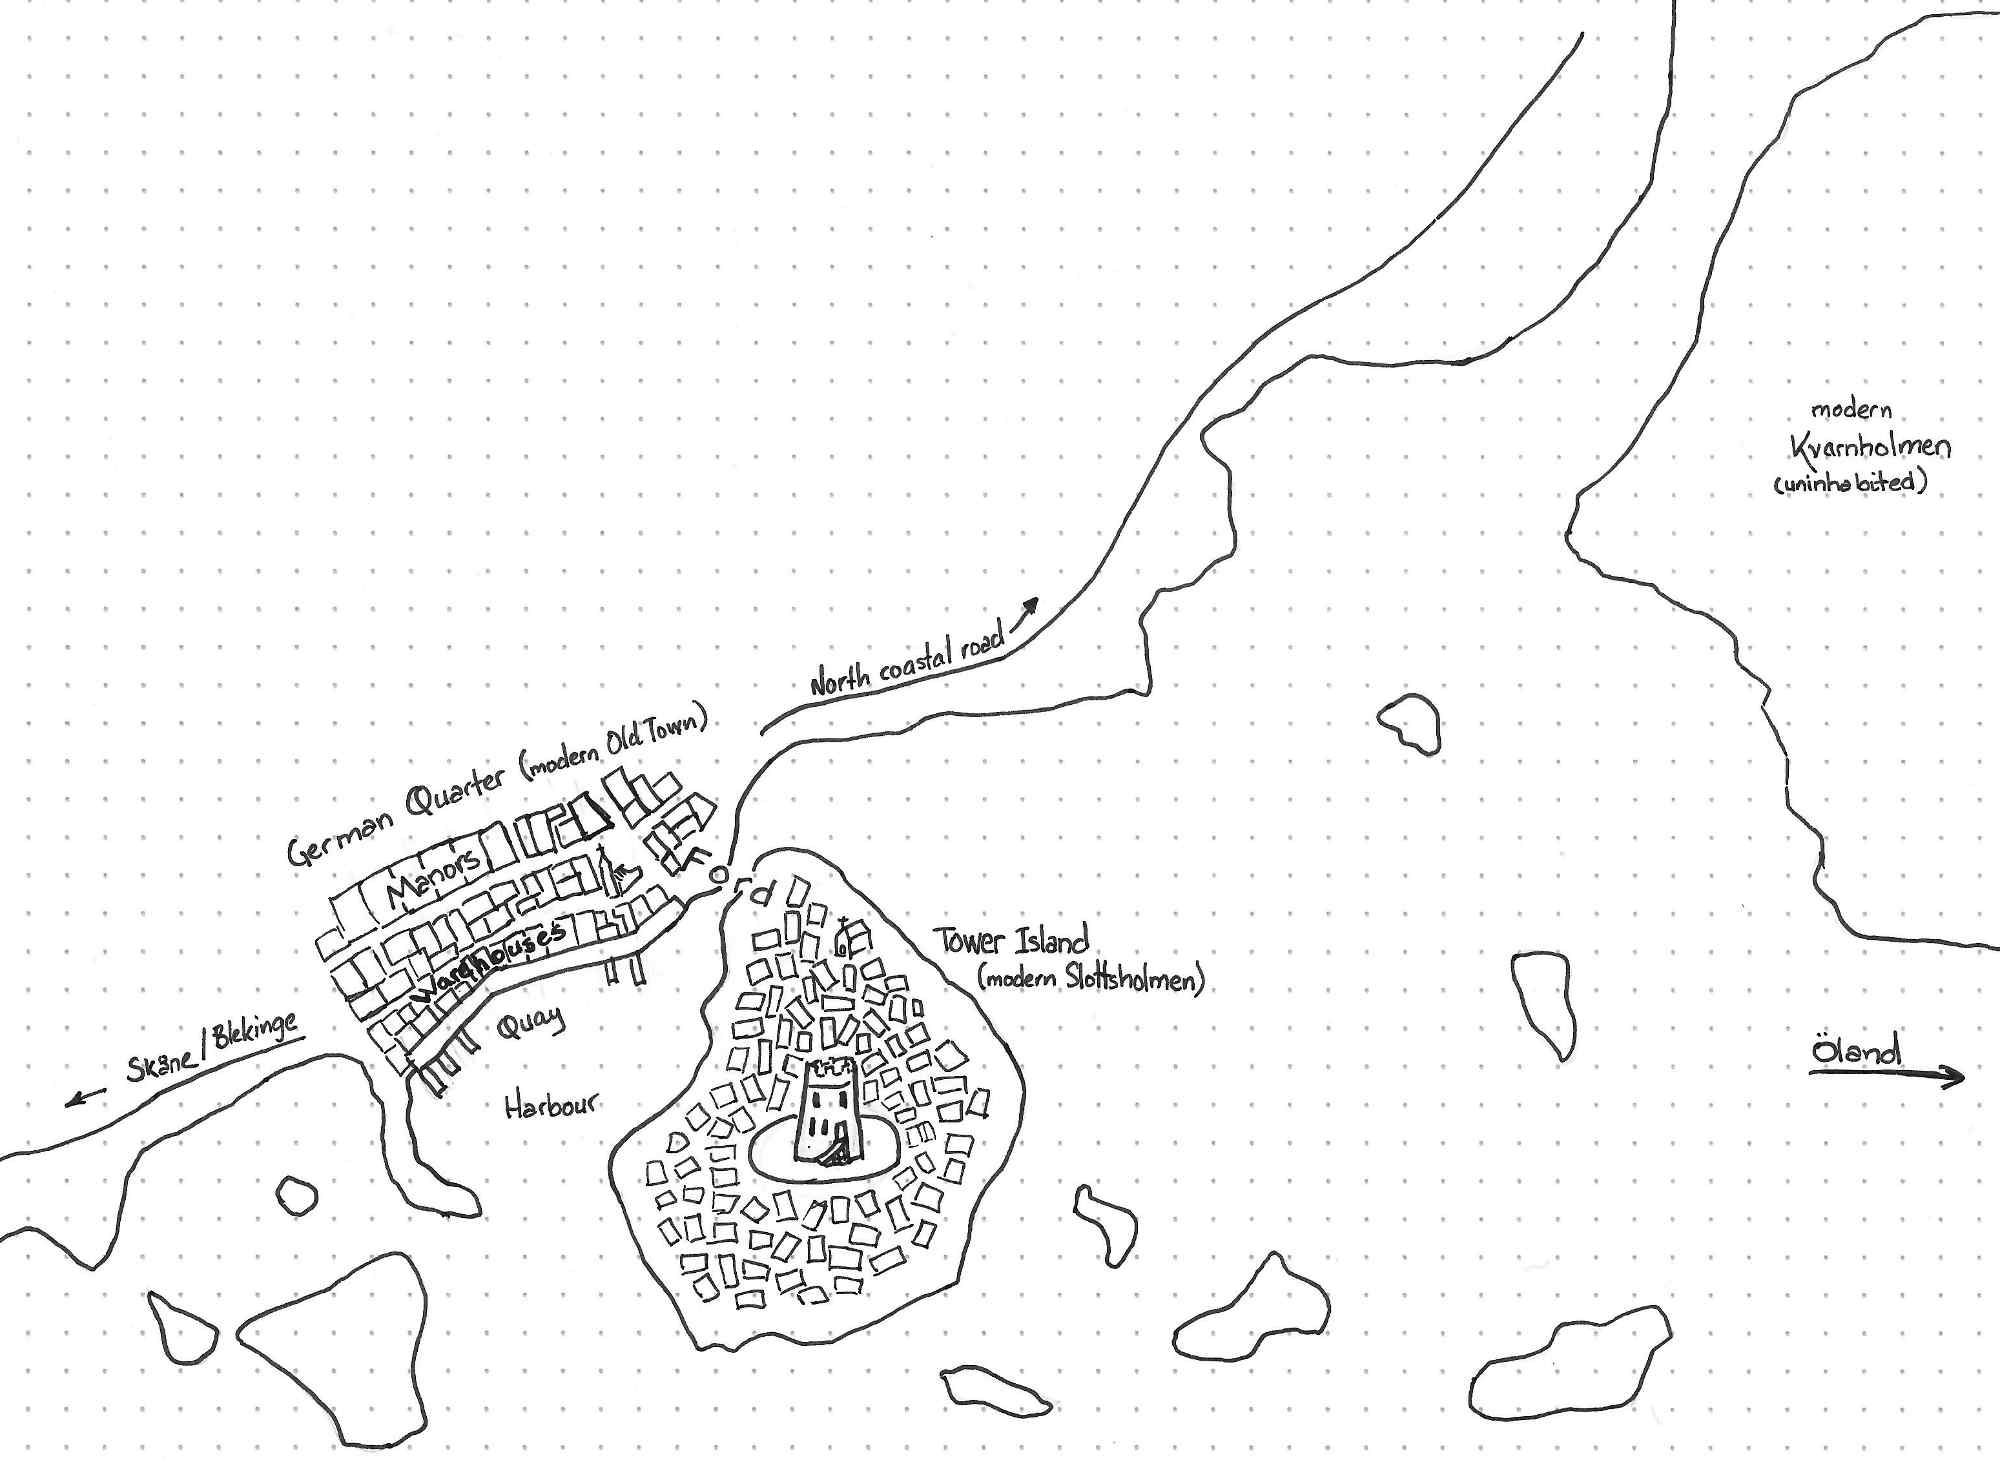 A map of Kalmar